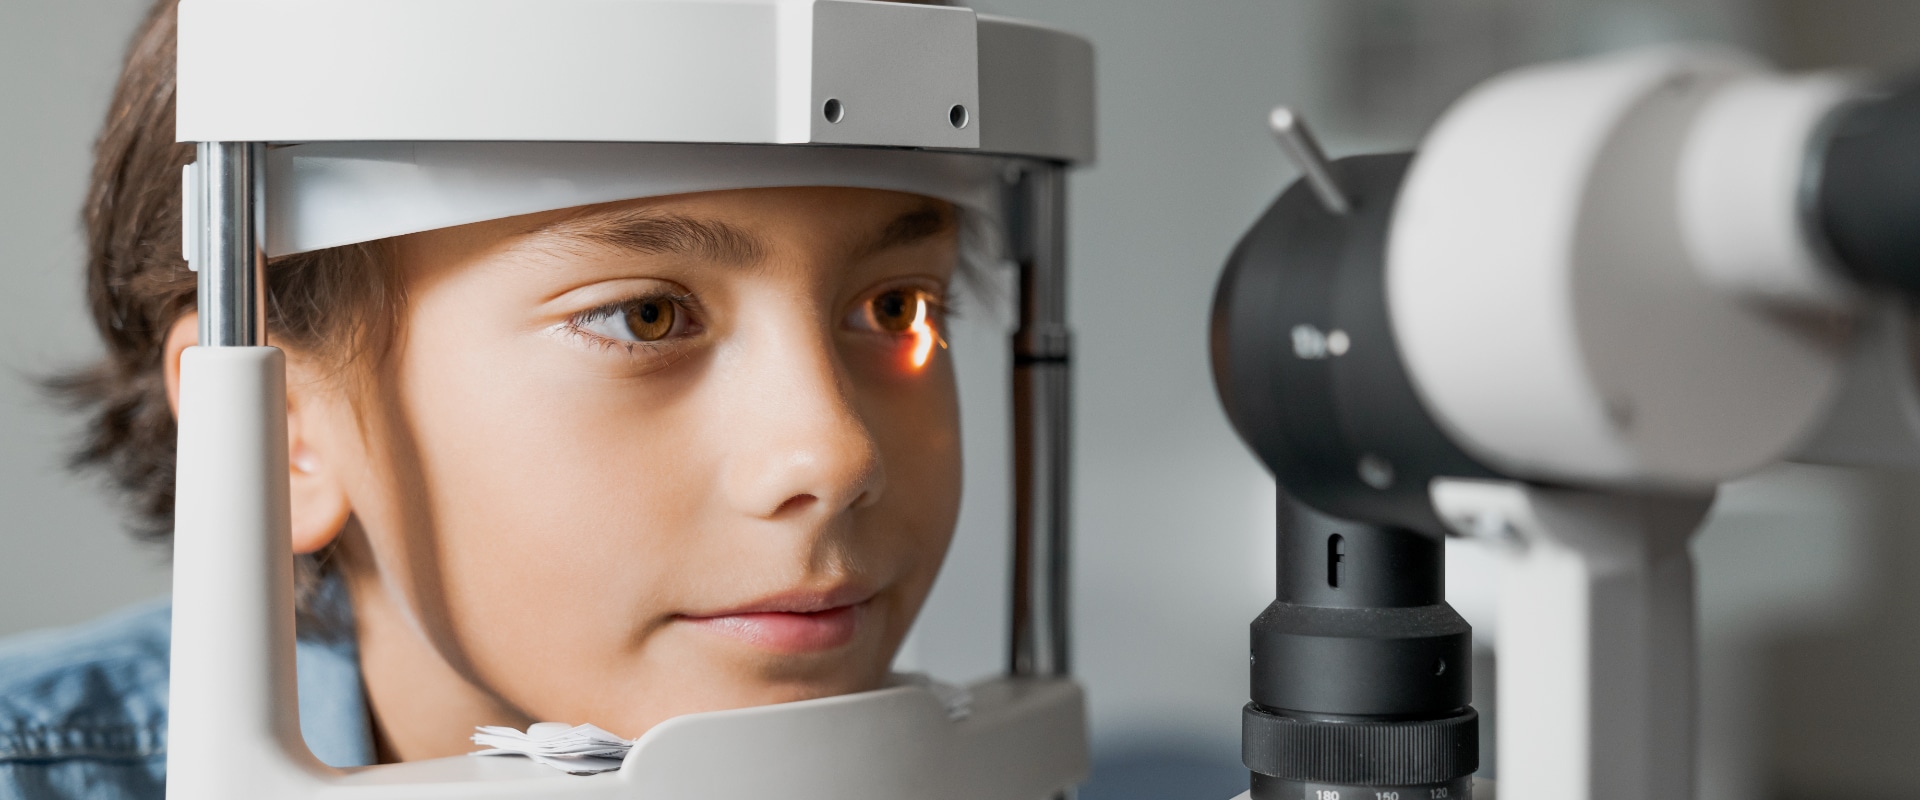 La miopía es una de las enfermedades de la vista más comunes en niños y adultos.